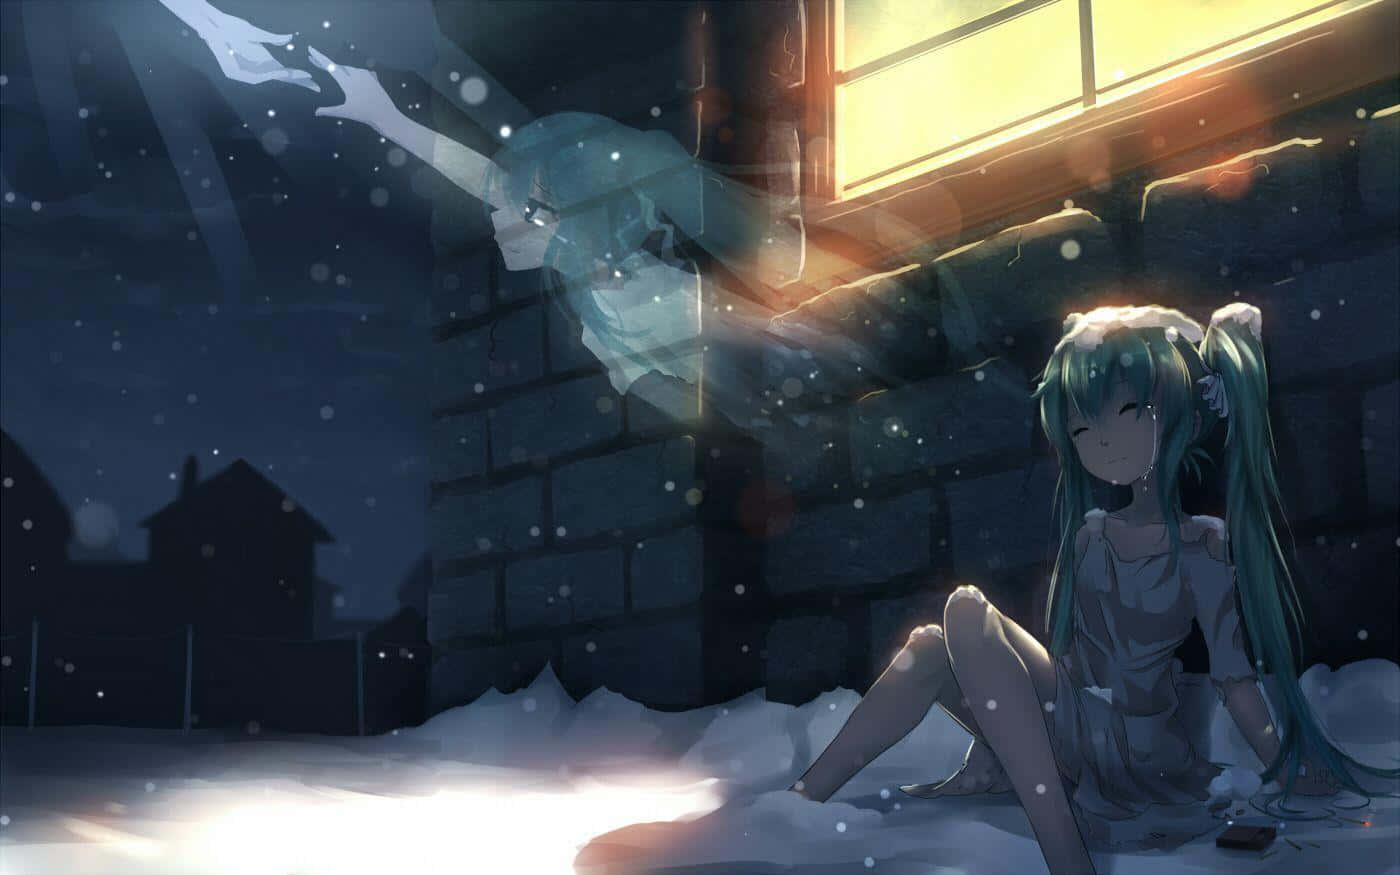 Einstandbild Aus Dem Unglaublich Beliebten Anime, Das Schwierige Emotionen Der Depression Darstellt. Wallpaper